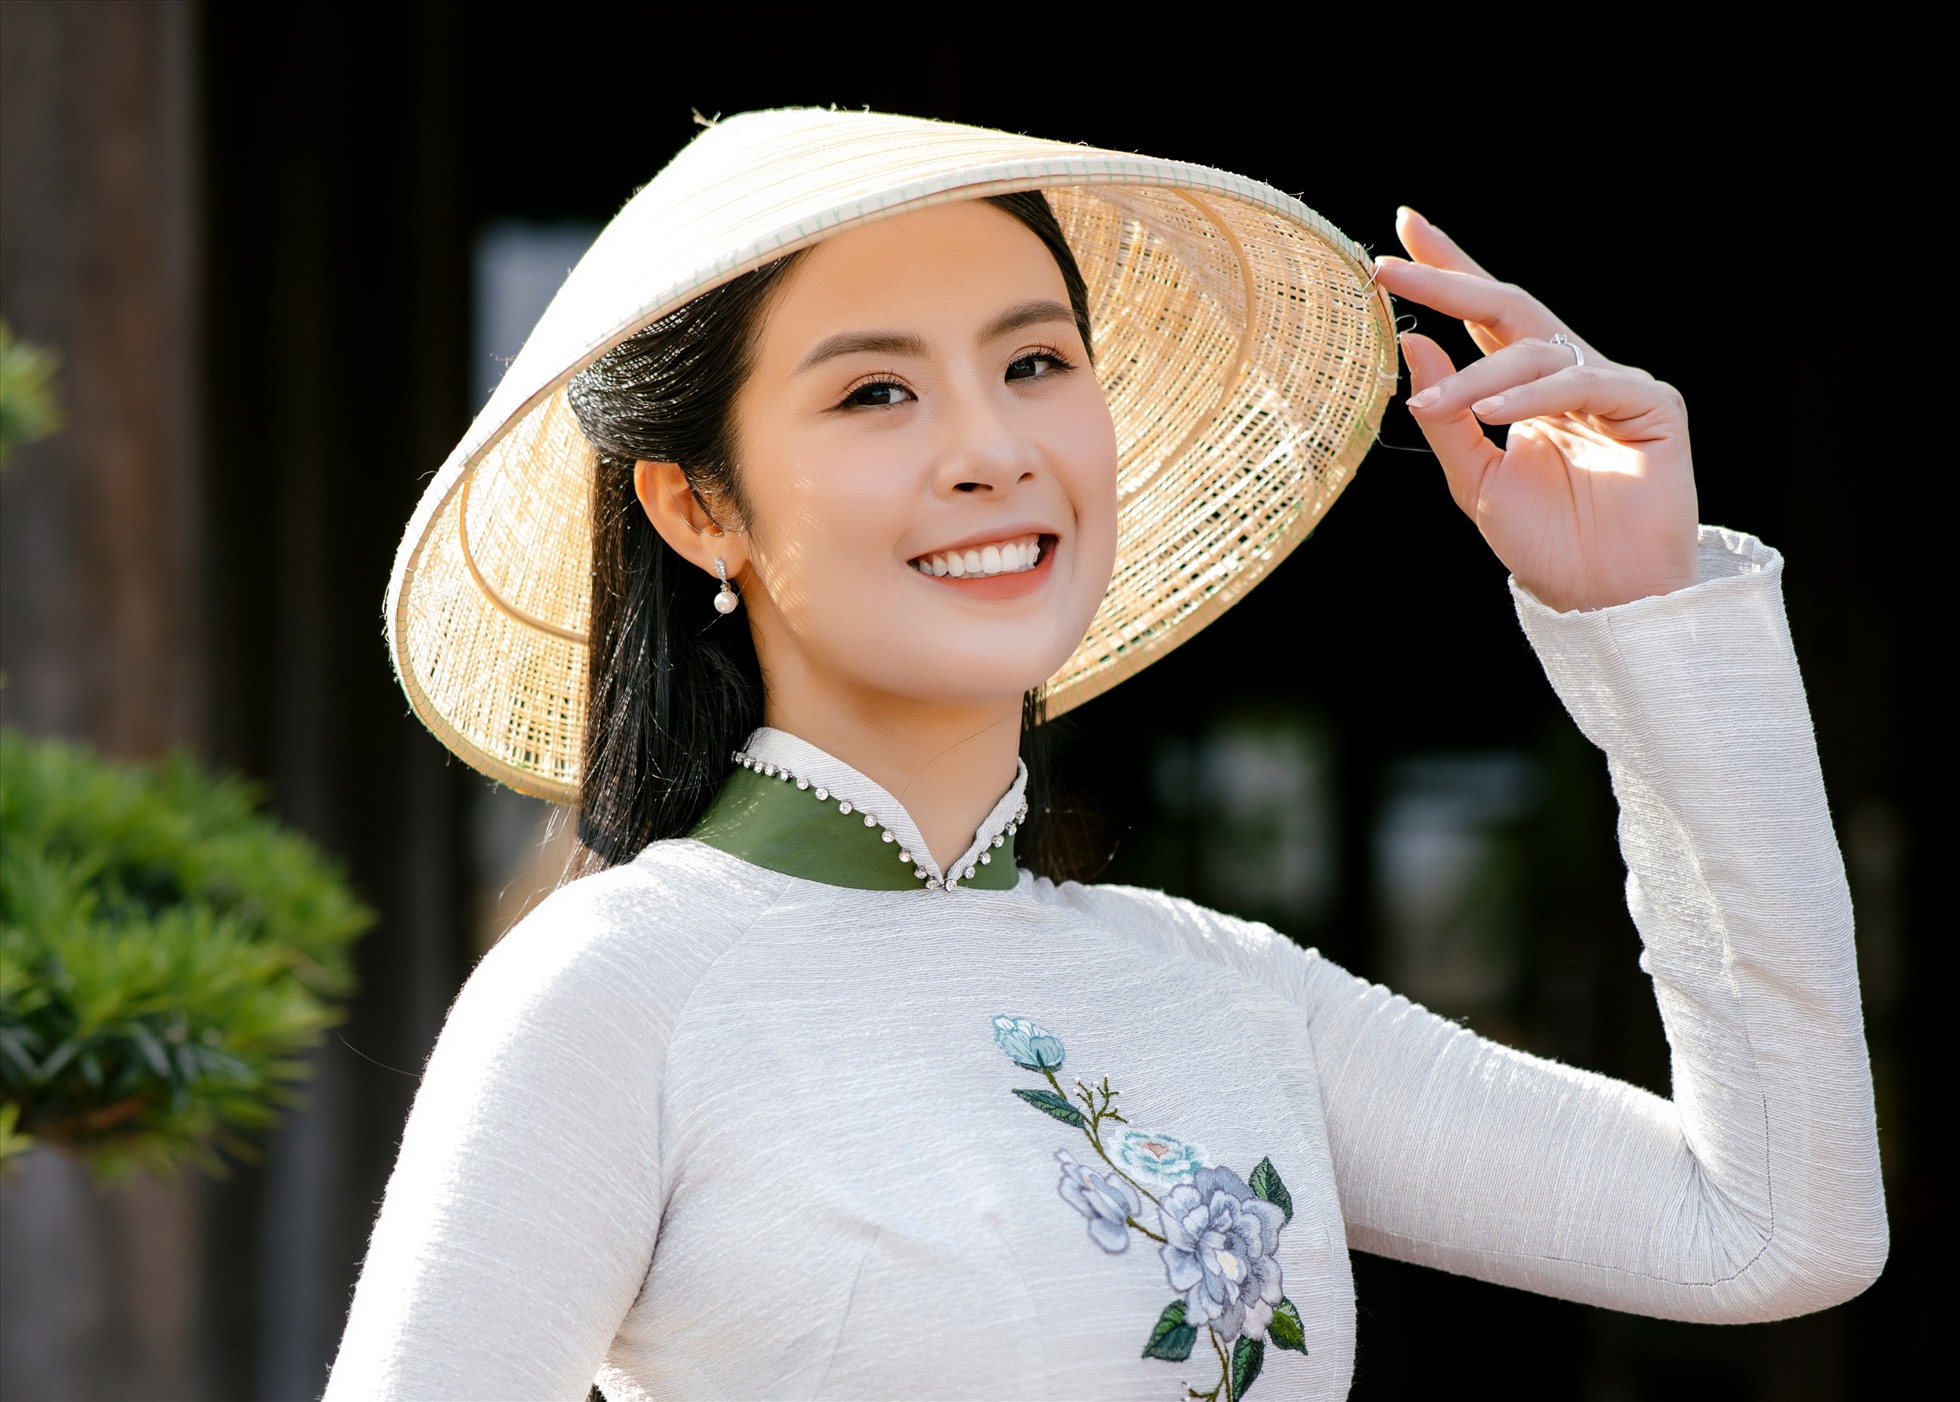 Hoa hậu Ngọc Hân giới thiệu bộ sưu tập áo dài mới từ tình yêu với cố đô Huế